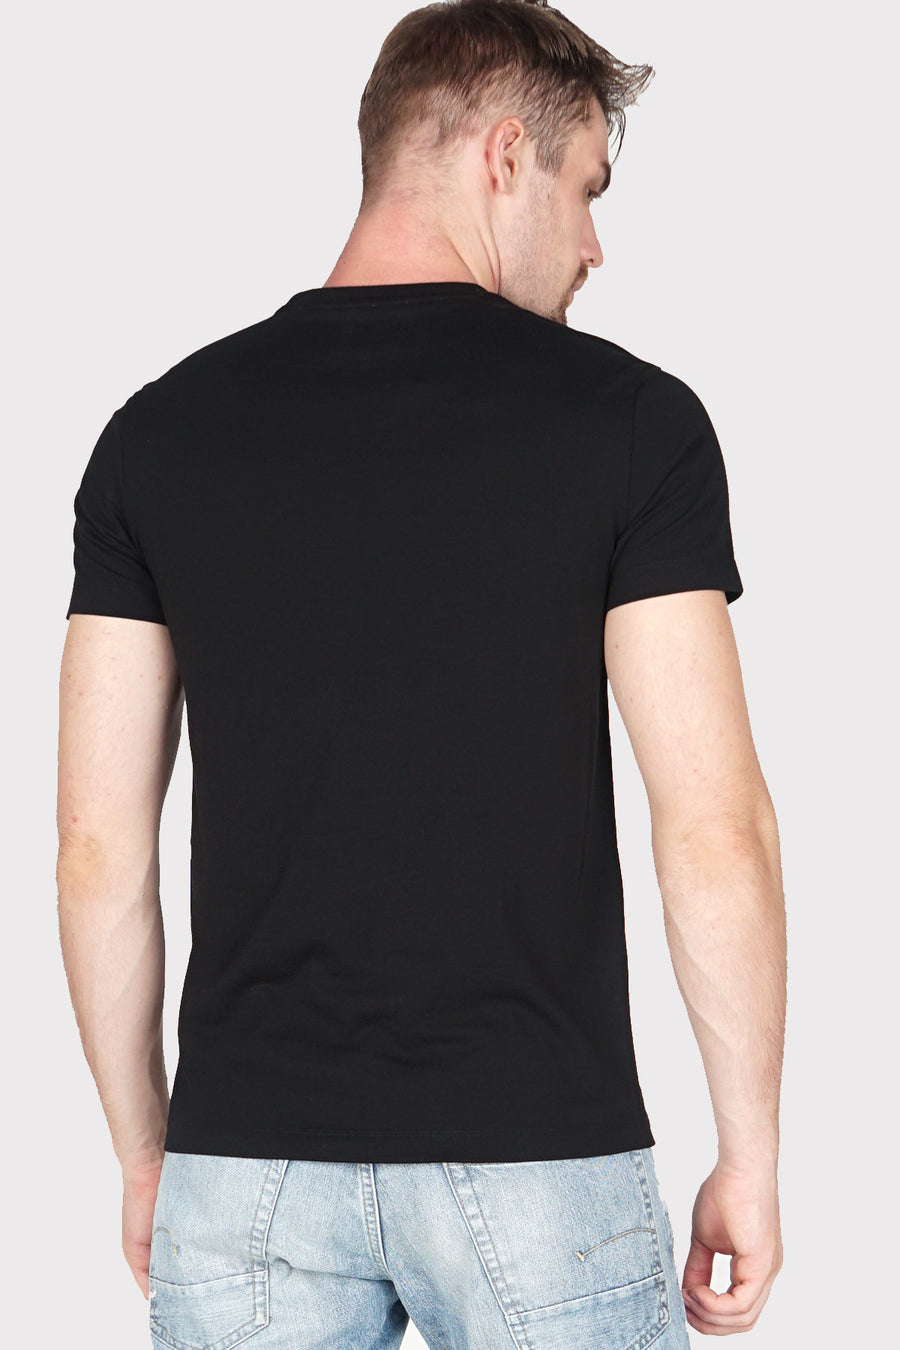 T-Shirt Lengan Pendek Caustic Black